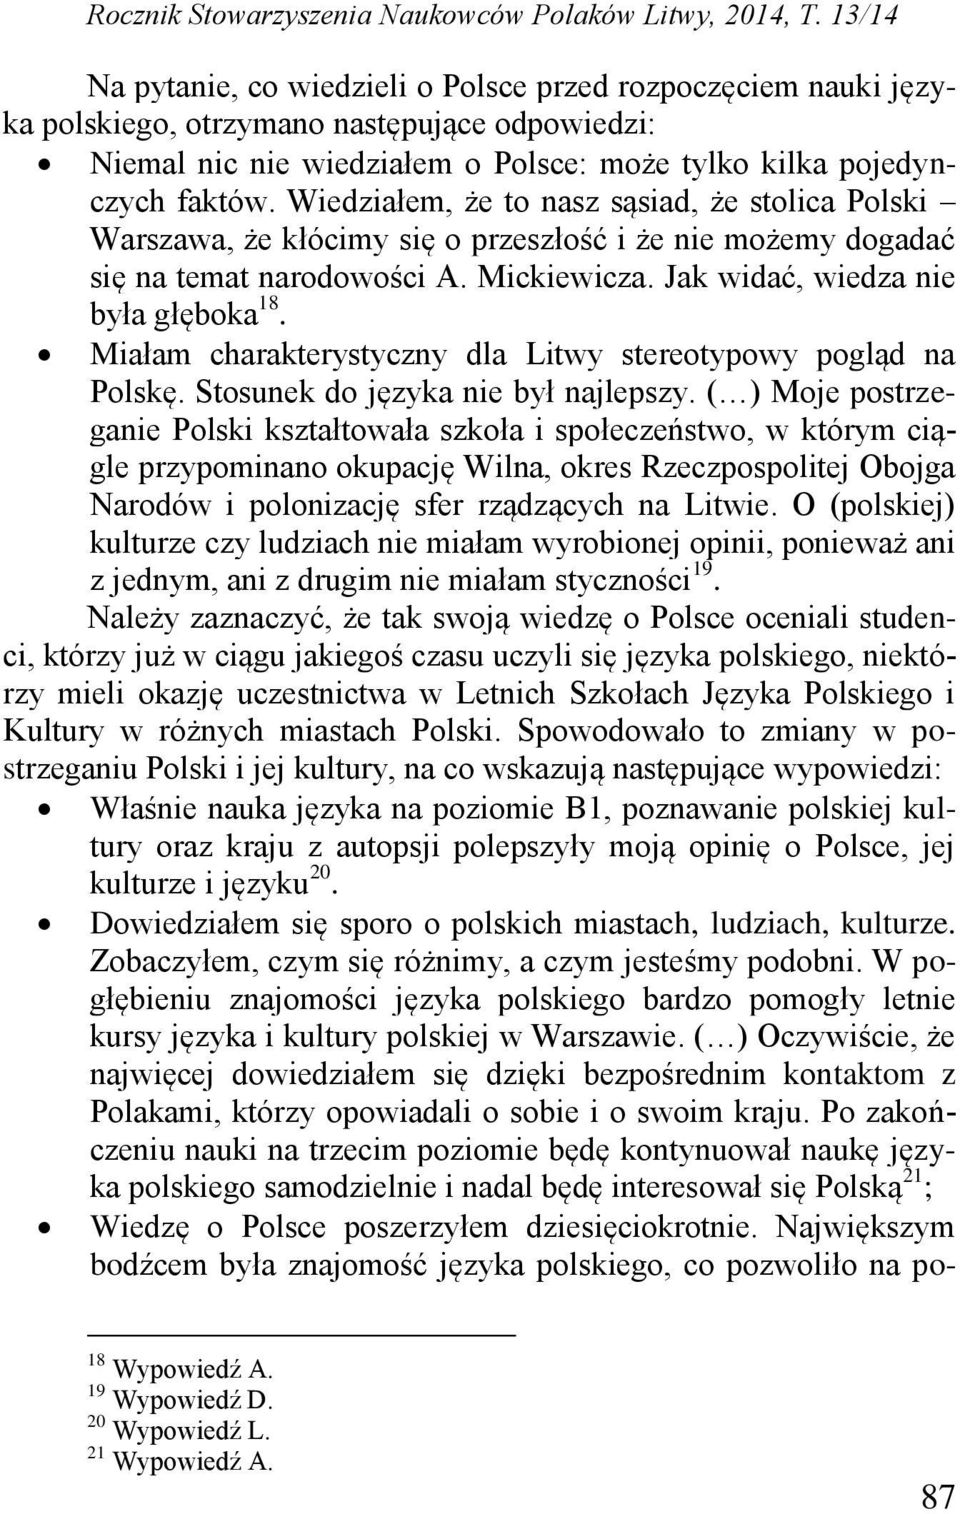 Wiedziałem, że to nasz sąsiad, że stolica Polski Warszawa, że kłócimy się o przeszłość i że nie możemy dogadać się na temat narodowości A. Mickiewicza. Jak widać, wiedza nie była głęboka 18.